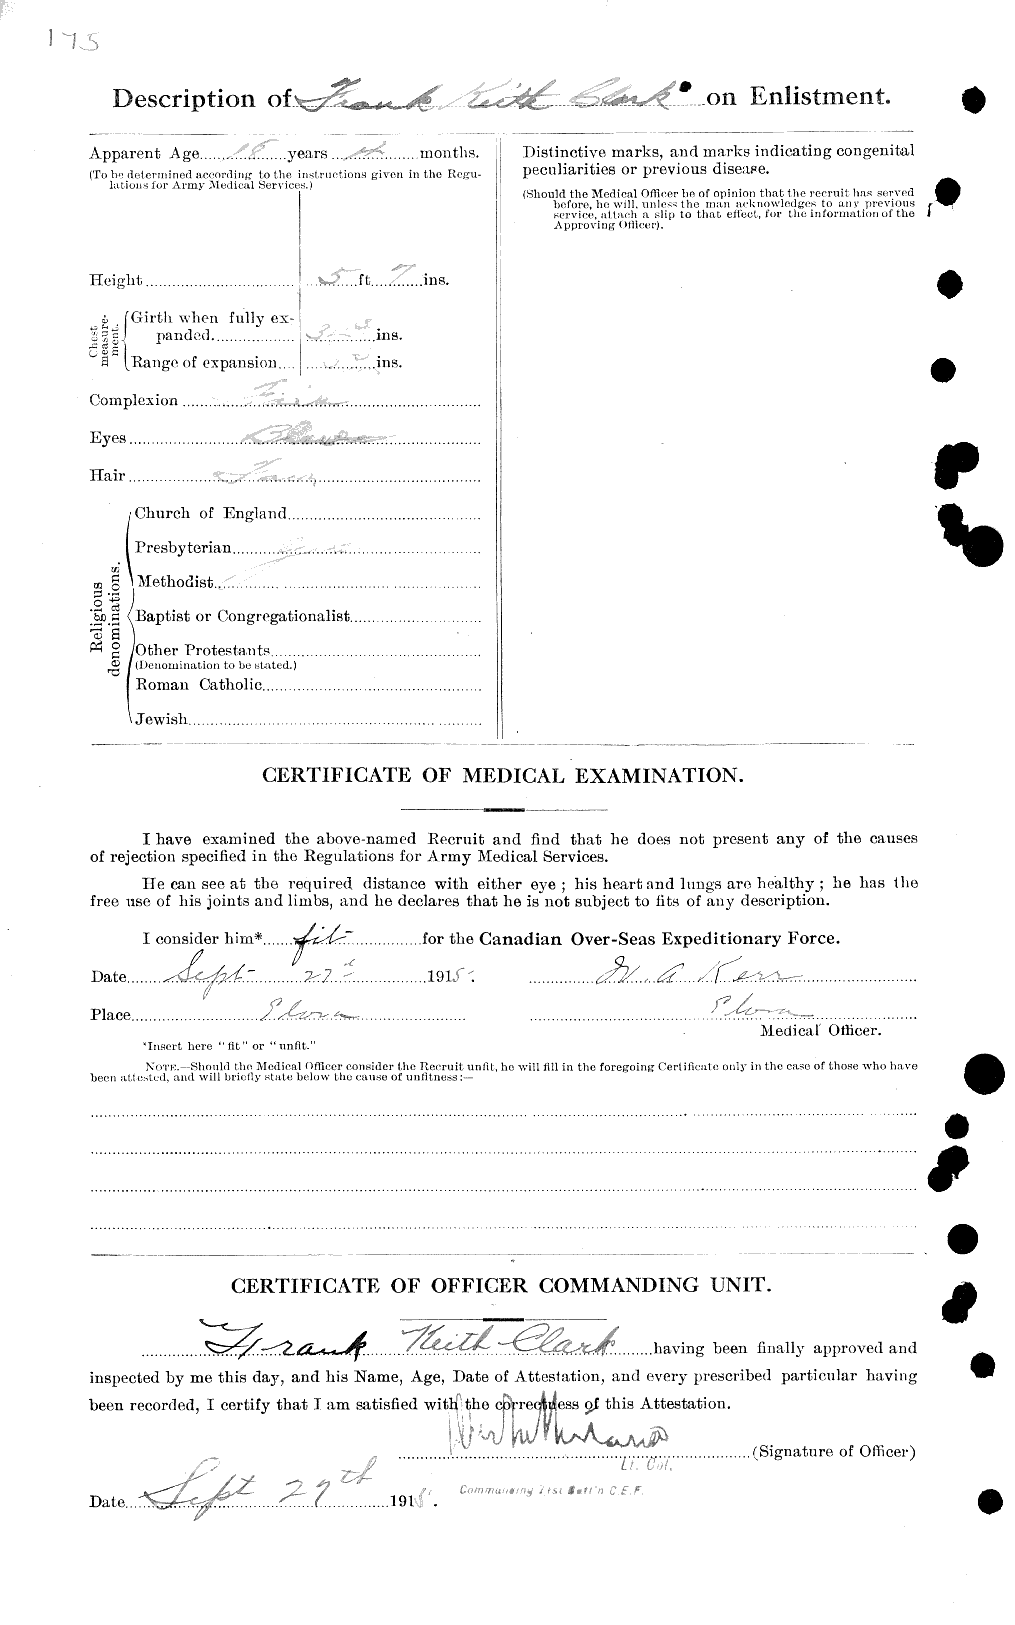 Dossiers du Personnel de la Première Guerre mondiale - CEC 020910b